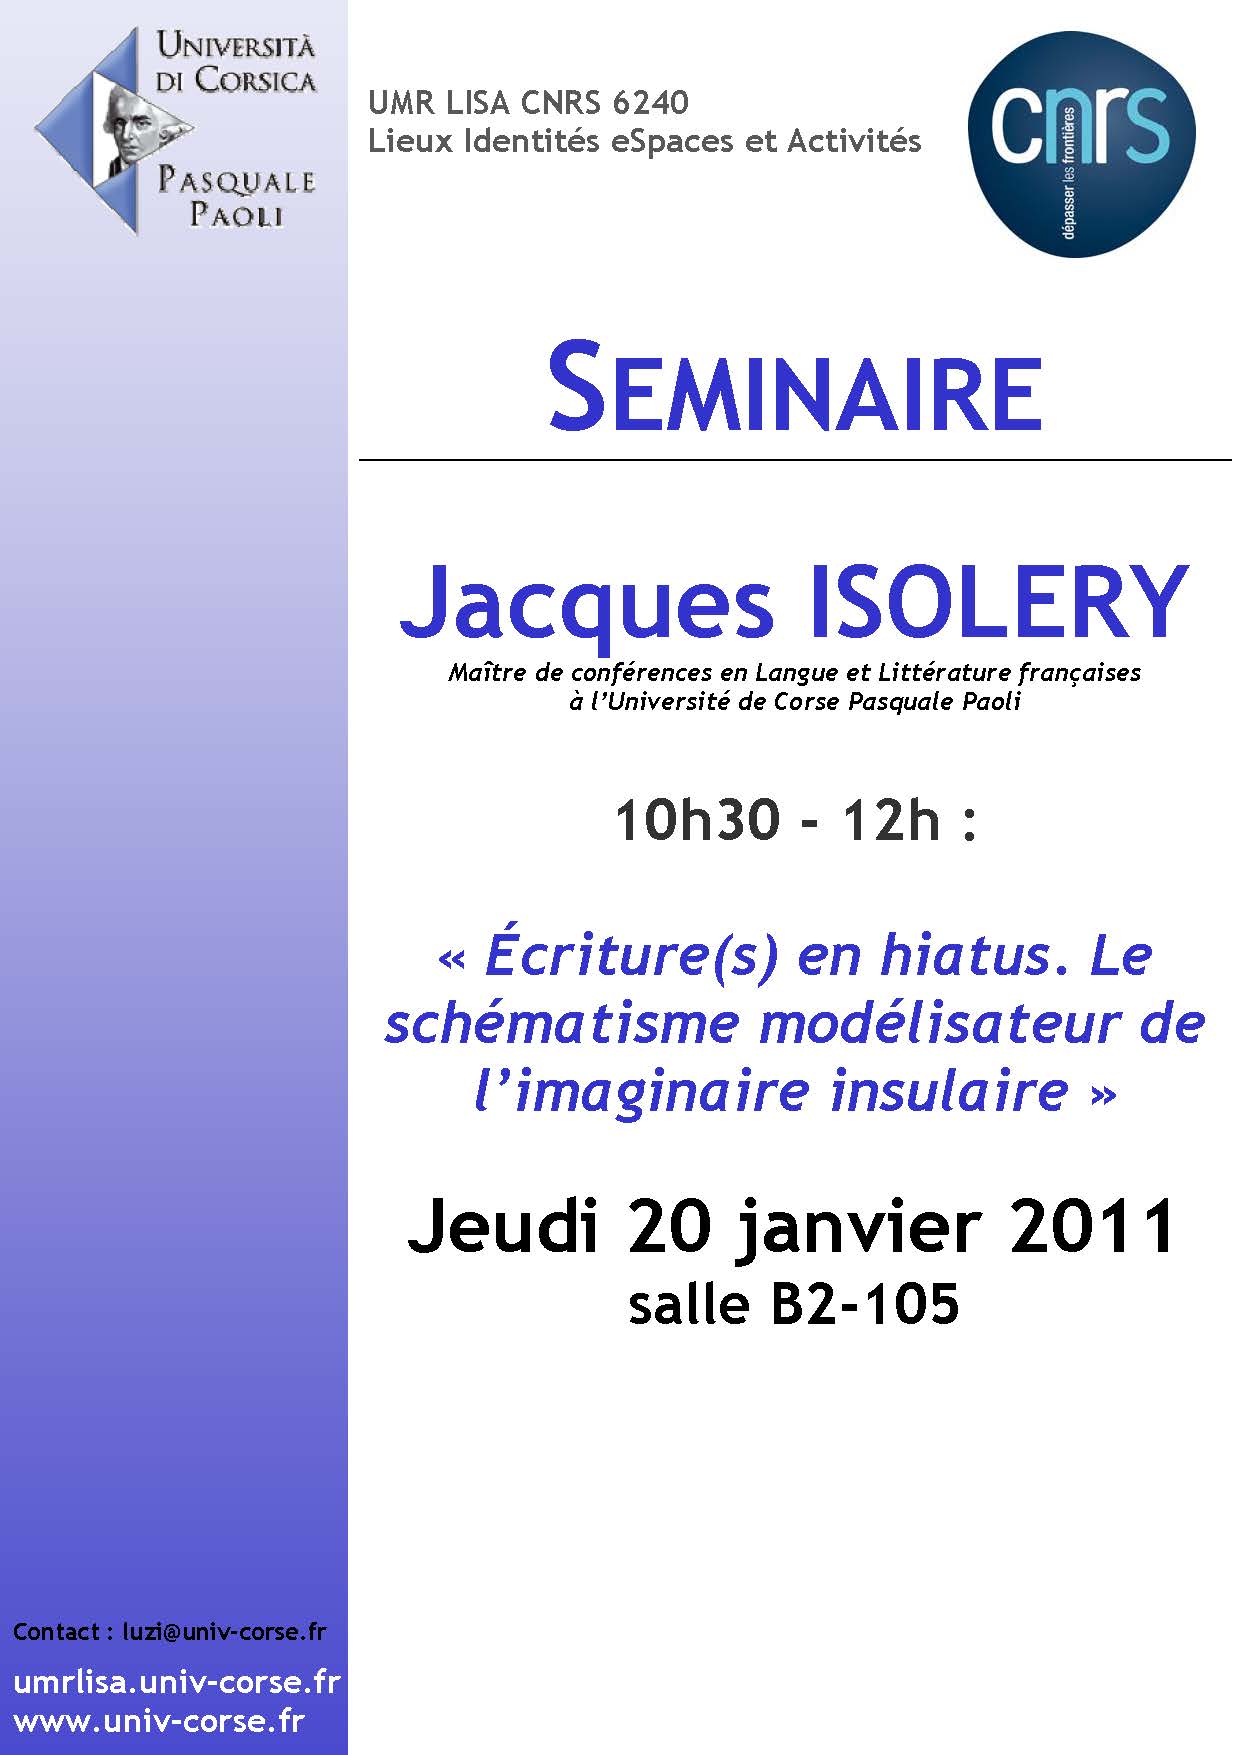 Séminaire Jacques Isolery - Ecritures en hiatus, le schématisme modélisateur de l'imaginaire insulaire